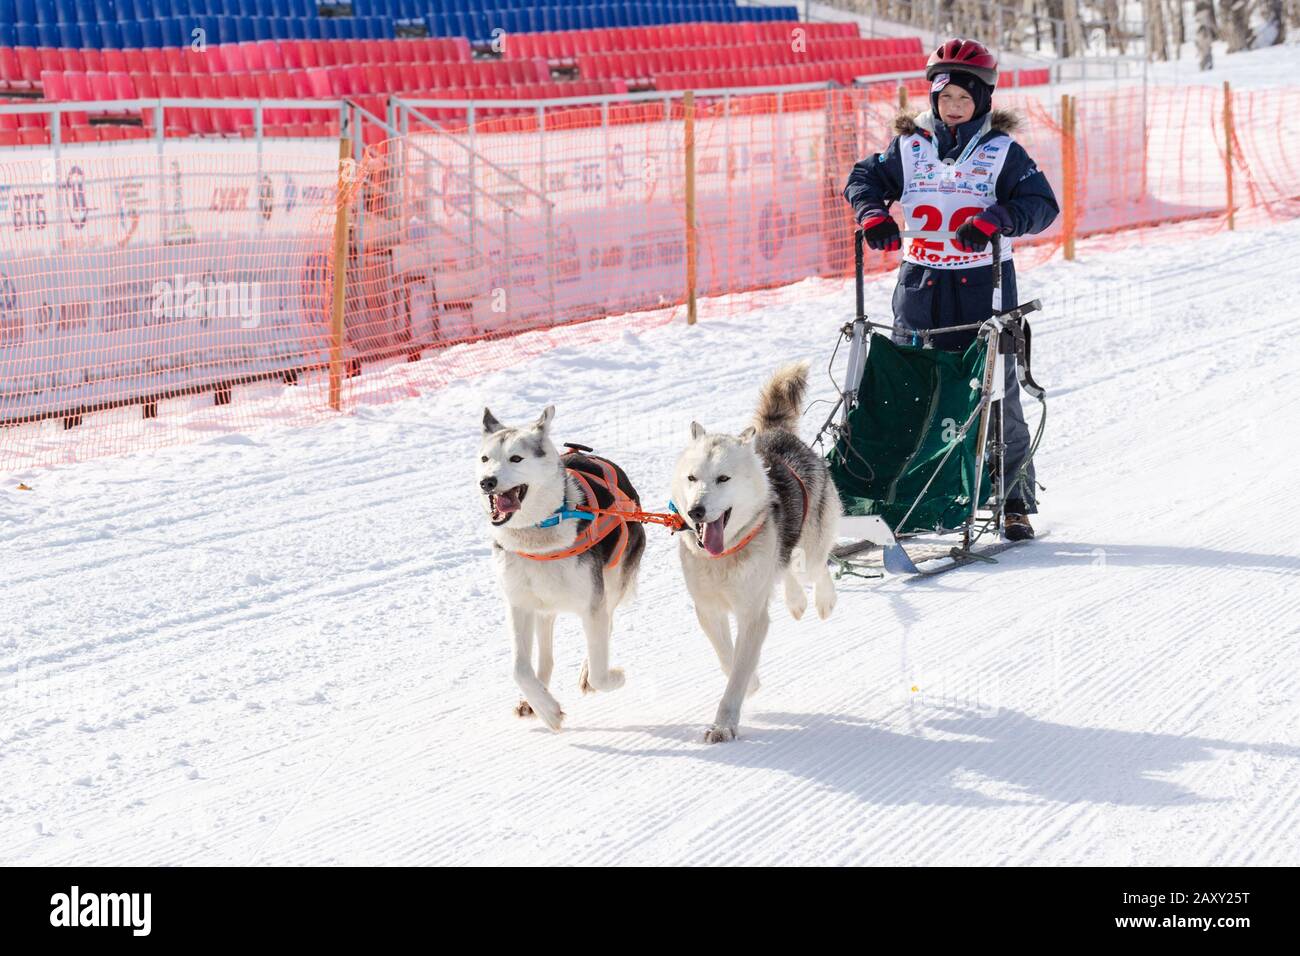 L'équipe masculine de chiens de traîneau à chiens, qui suit une course enneigée pendant les concours Kamchatka Kids Competitions Sledge Dog Racing Dyulin (Beringia). Petropavlovsk Banque D'Images